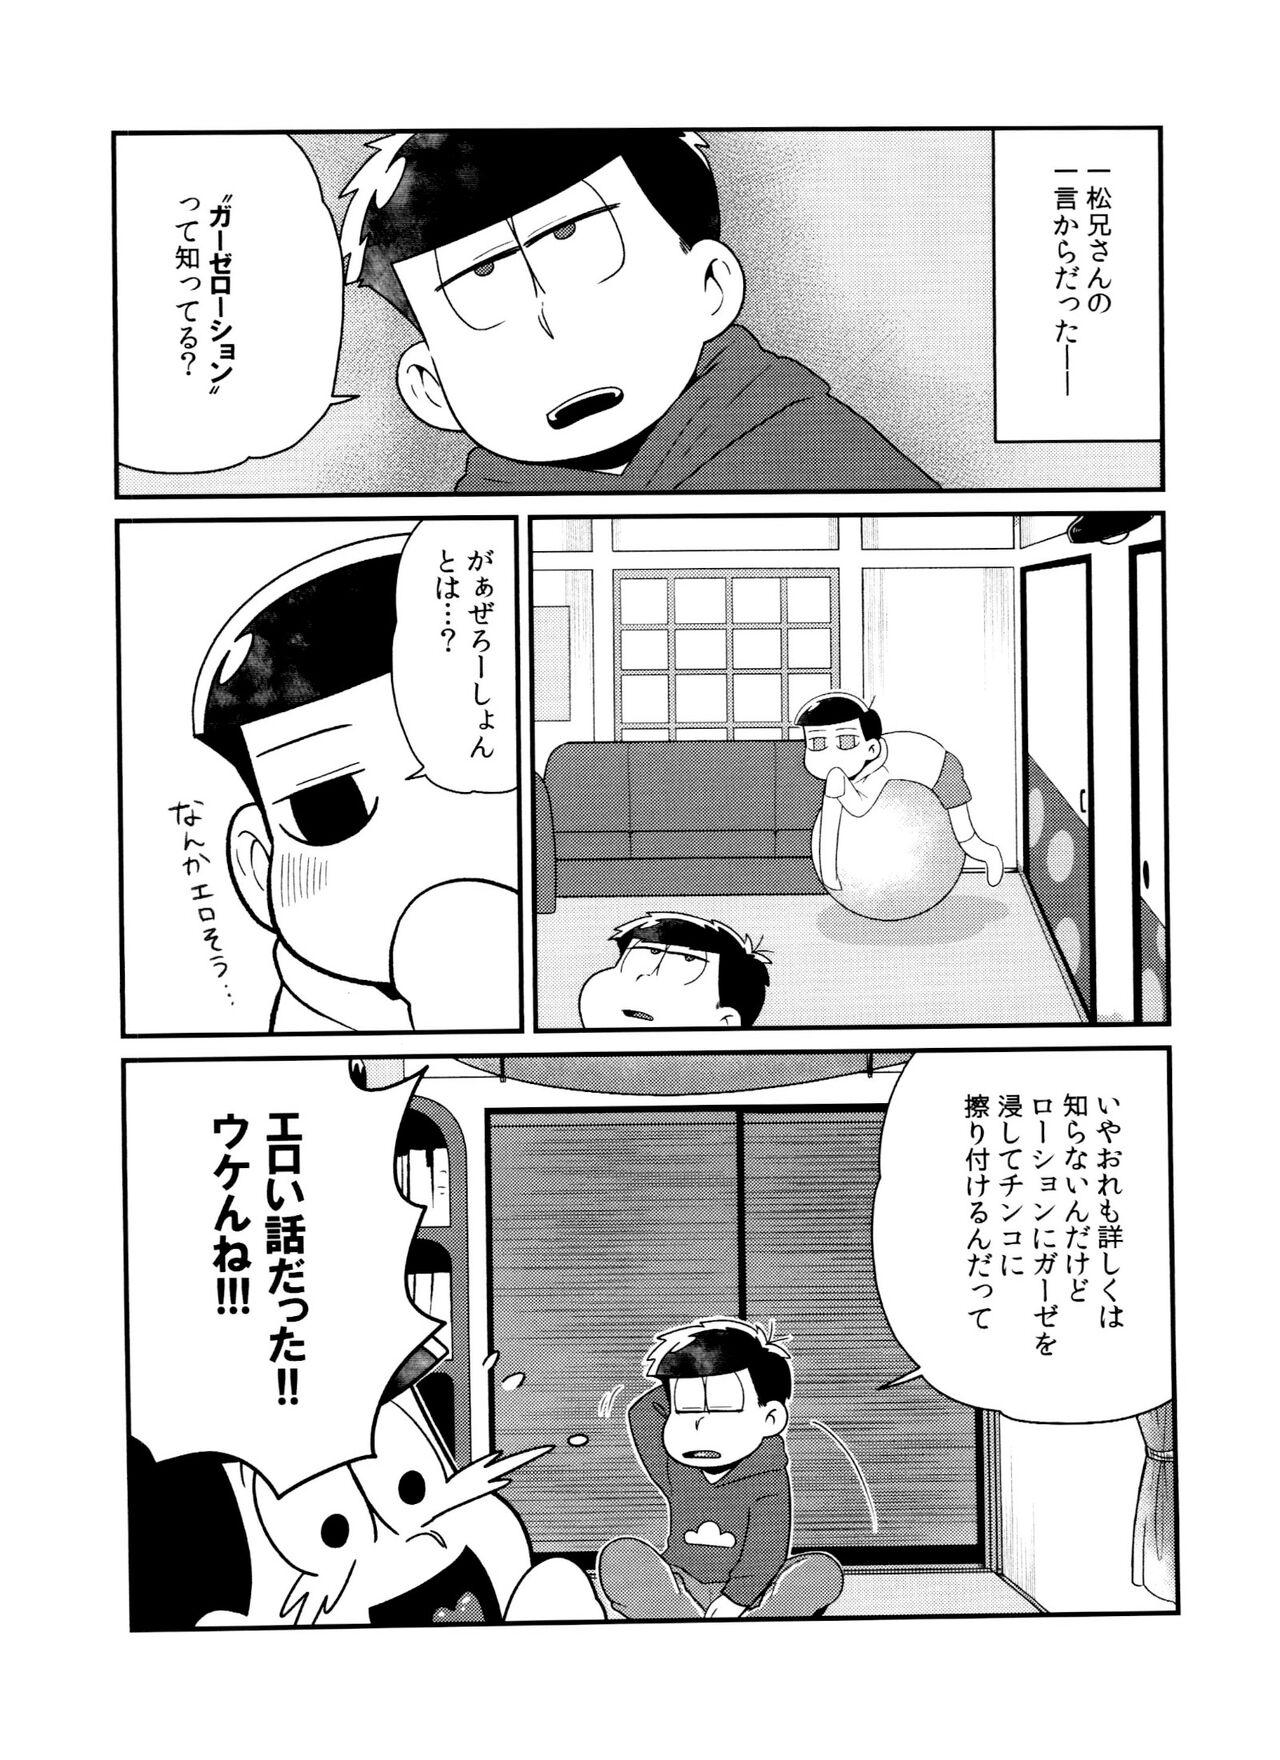 Guyonshemale nurunuru DE de ~ ro - Osomatsu san Casa - Page 6